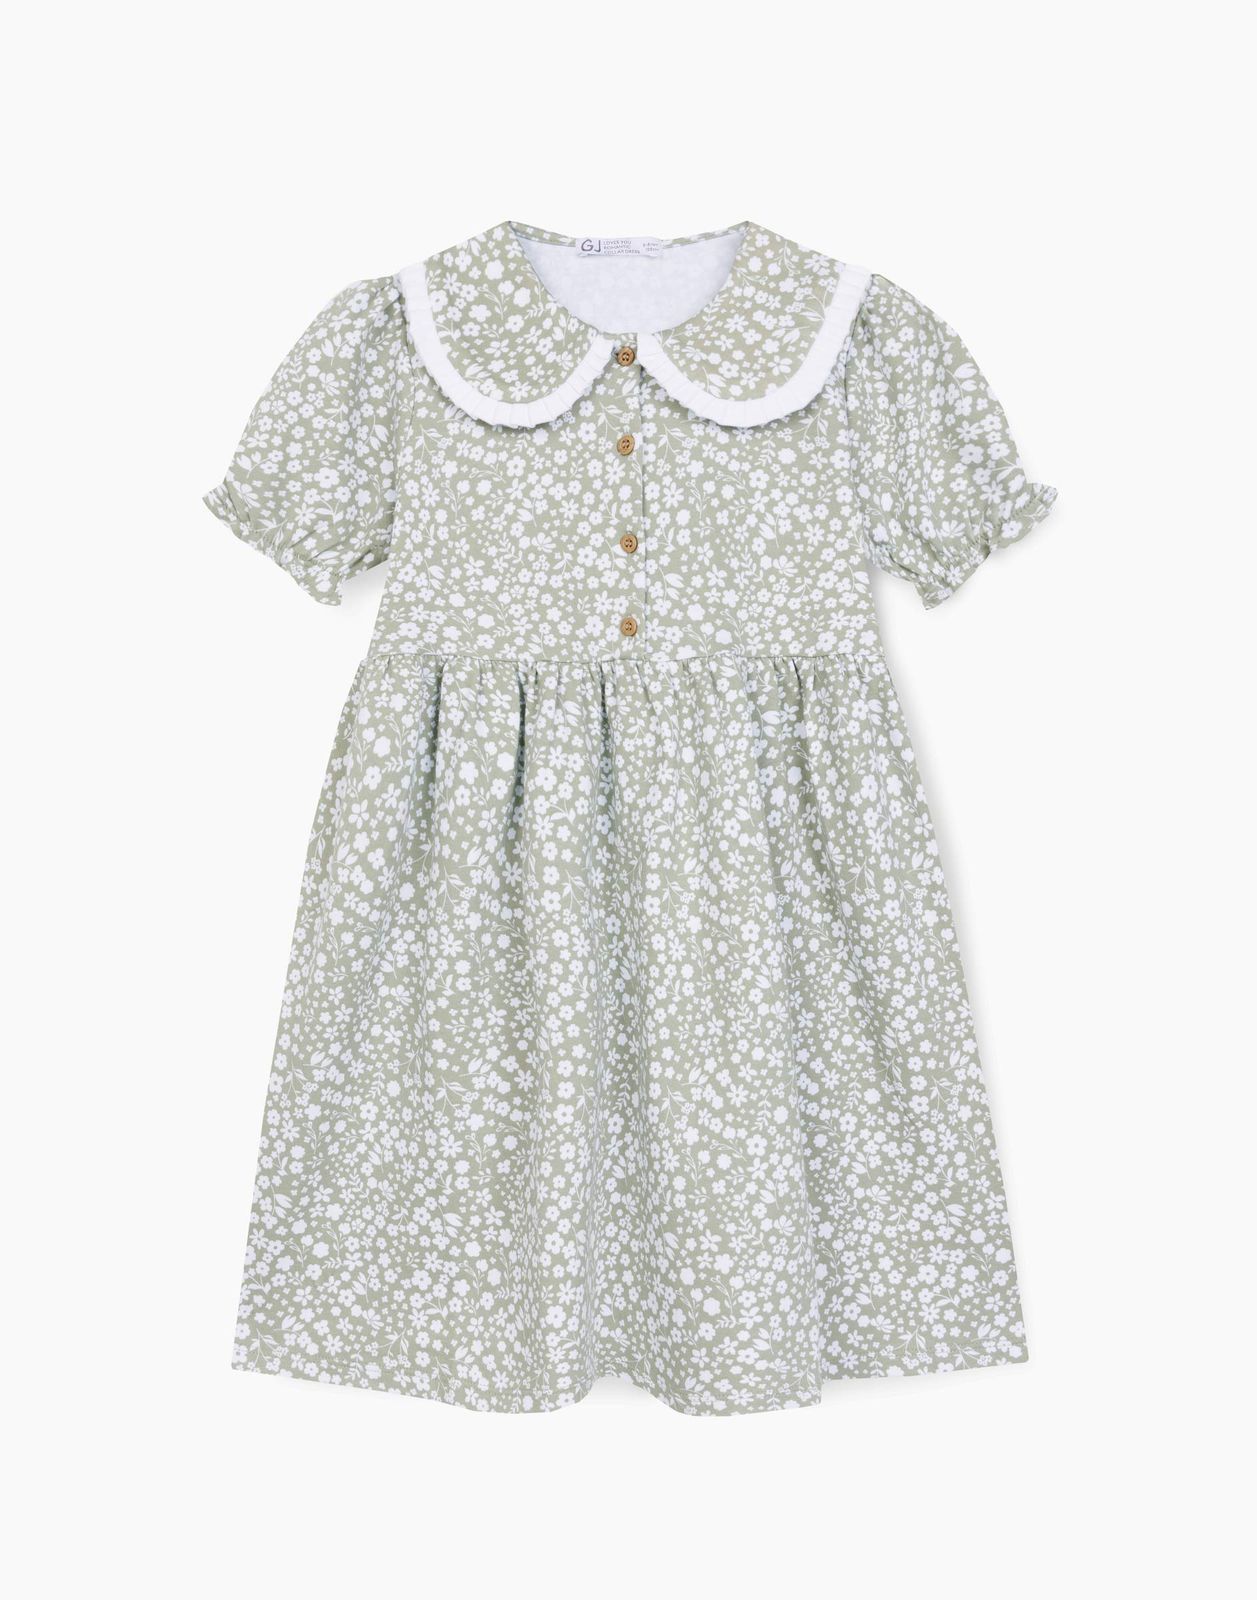 Платье детское Gloria Jeans GDR028132, оливковый/разноцветный, 134